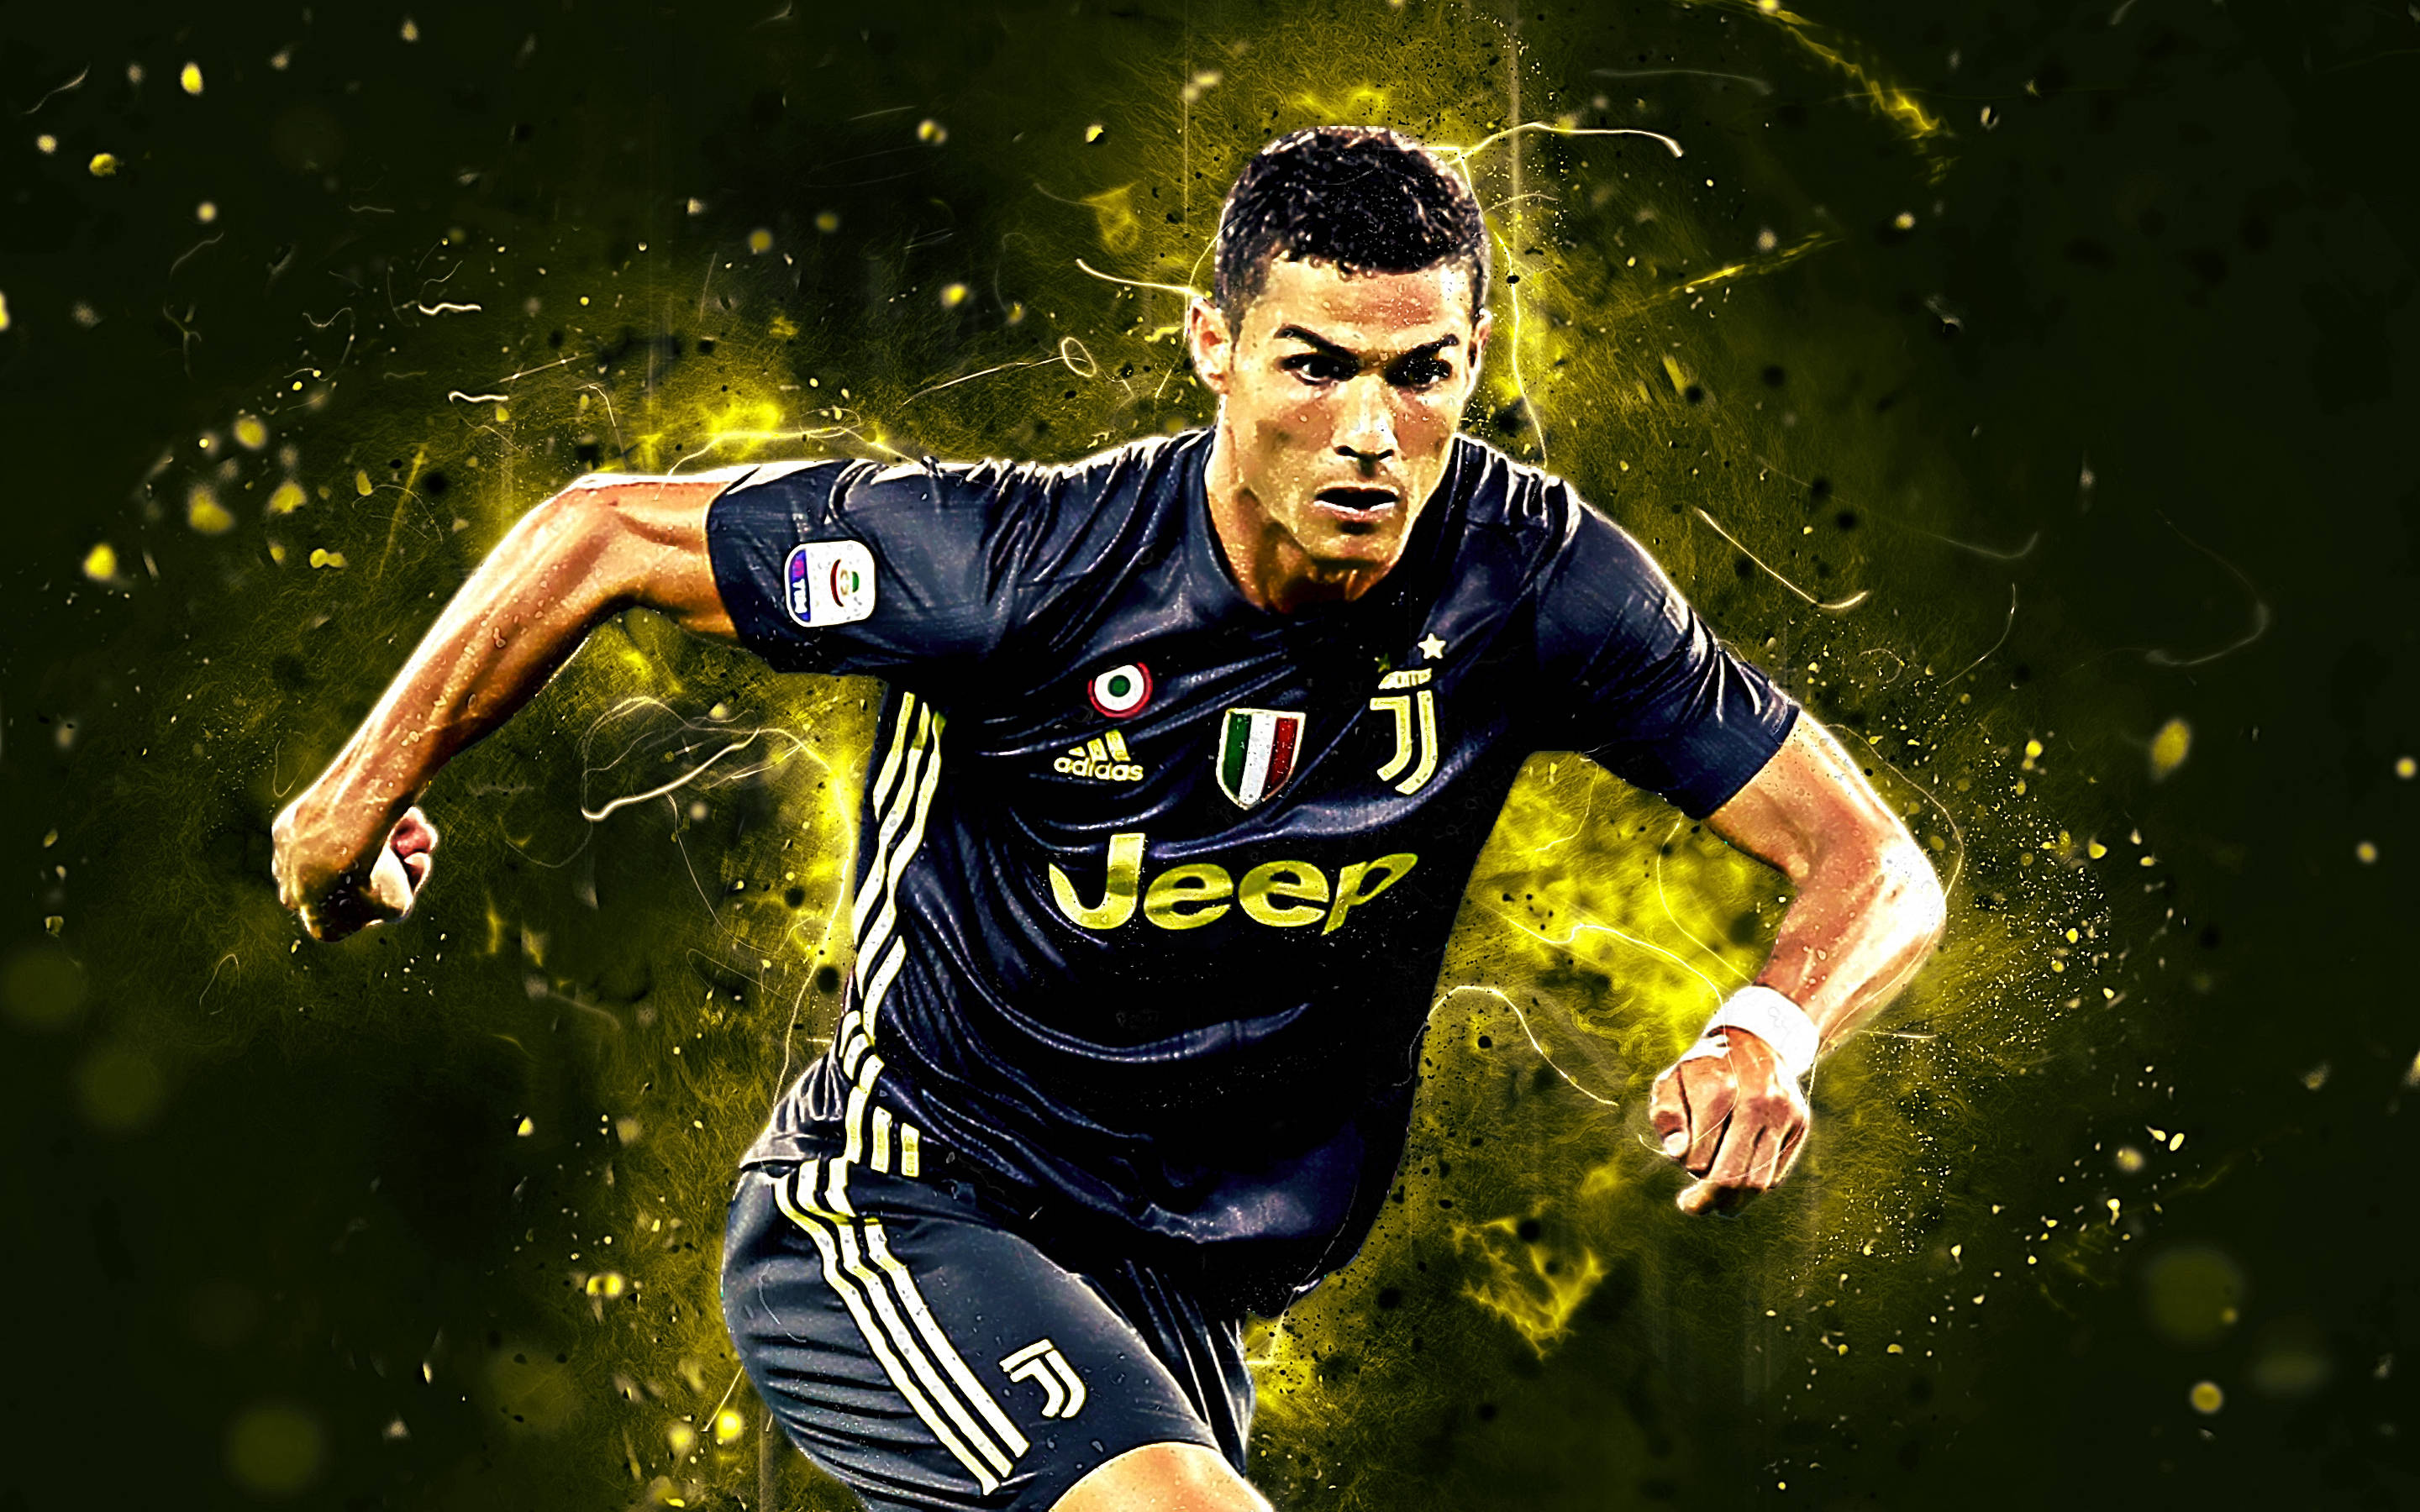 Bạn đang tìm kiếm một bức ảnh nền chất lượng cao về Cristiano Ronaldo? Đừng bỏ qua trang Wallpapers.com với bức ảnh 4K đẹp như mơ về ngôi sao bóng đá này. Hãy tải ngay và trang trí cho màn hình của mình thật đẹp mắt và ấn tượng.